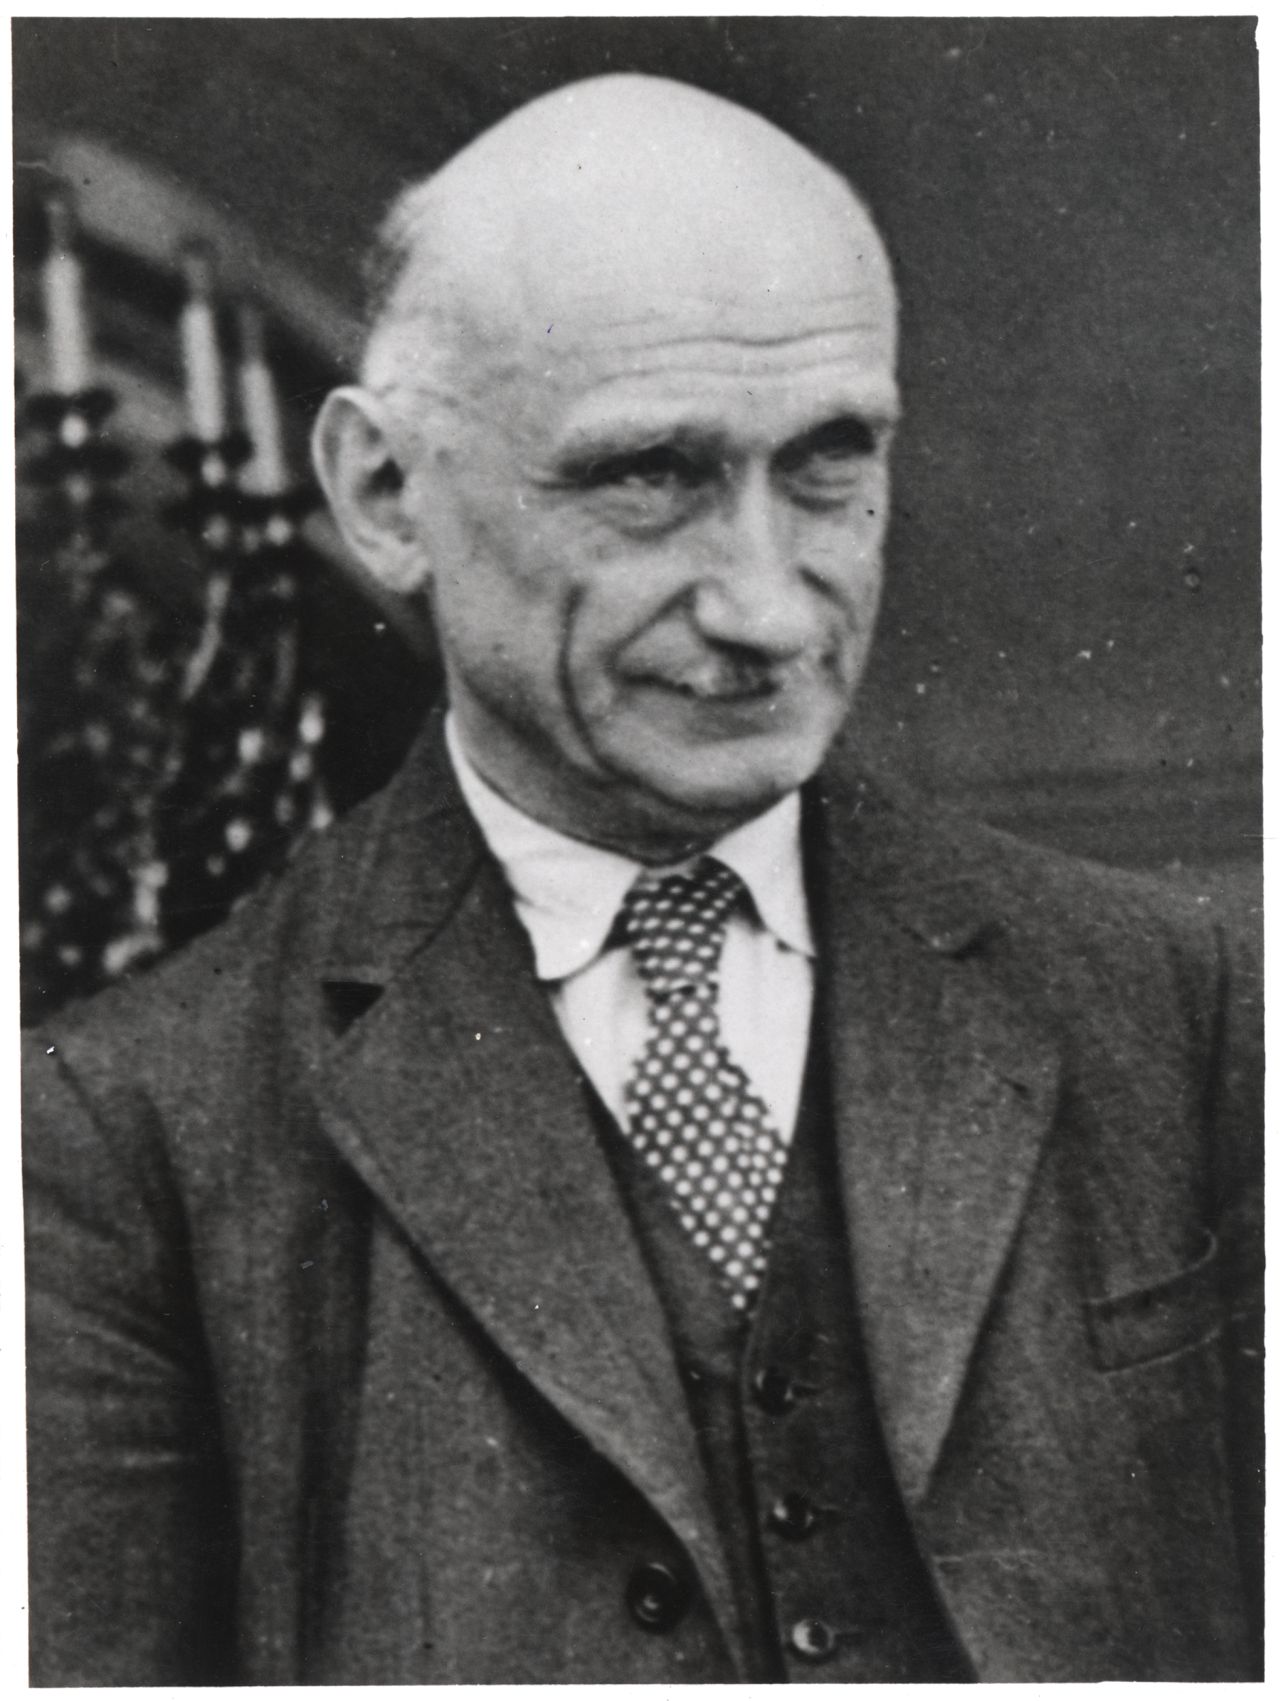 Fotografie des französischen Politikers Robert Schuman, 1949.